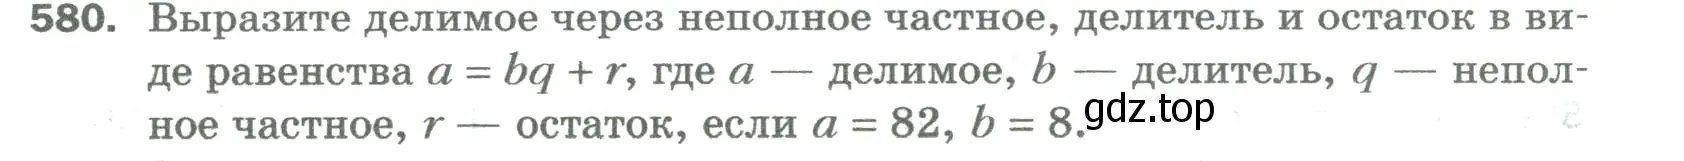 Условие номер 580 (страница 140) гдз по математике 5 класс Мерзляк, Полонский, учебник